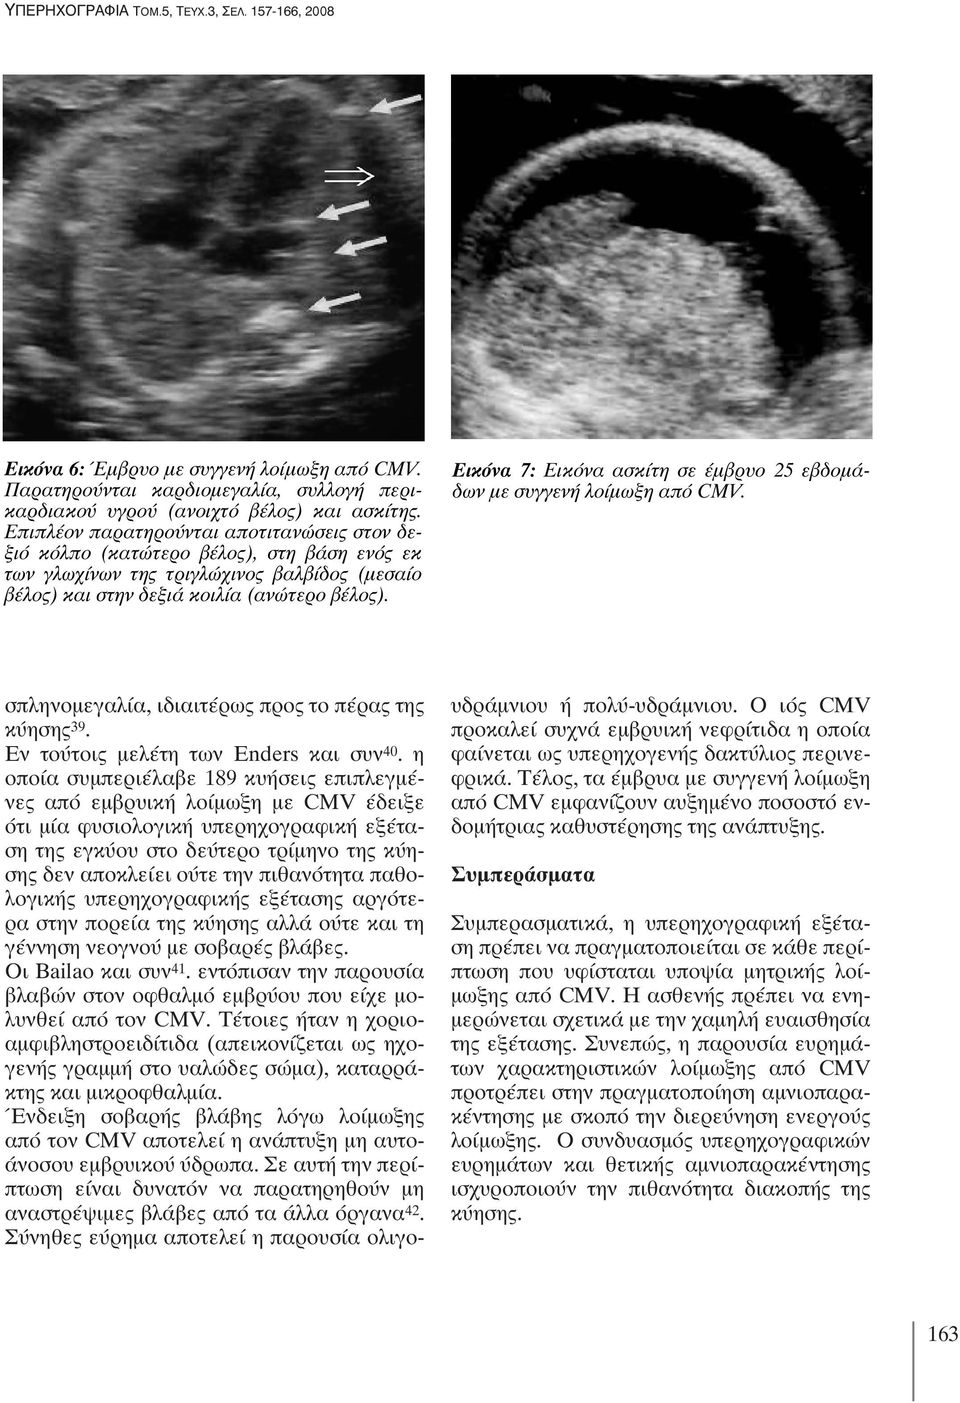 Εικόνα 7: Εικόνα ασκίτη σε έμβρυο 25 εβδομάδων με συγγενή λοίμωξη από CMV. σπληνομεγαλία, ιδιαιτέρως προς το πέρας της κύησης 39. Εν τούτοις μελέτη των Enders και συν 40.